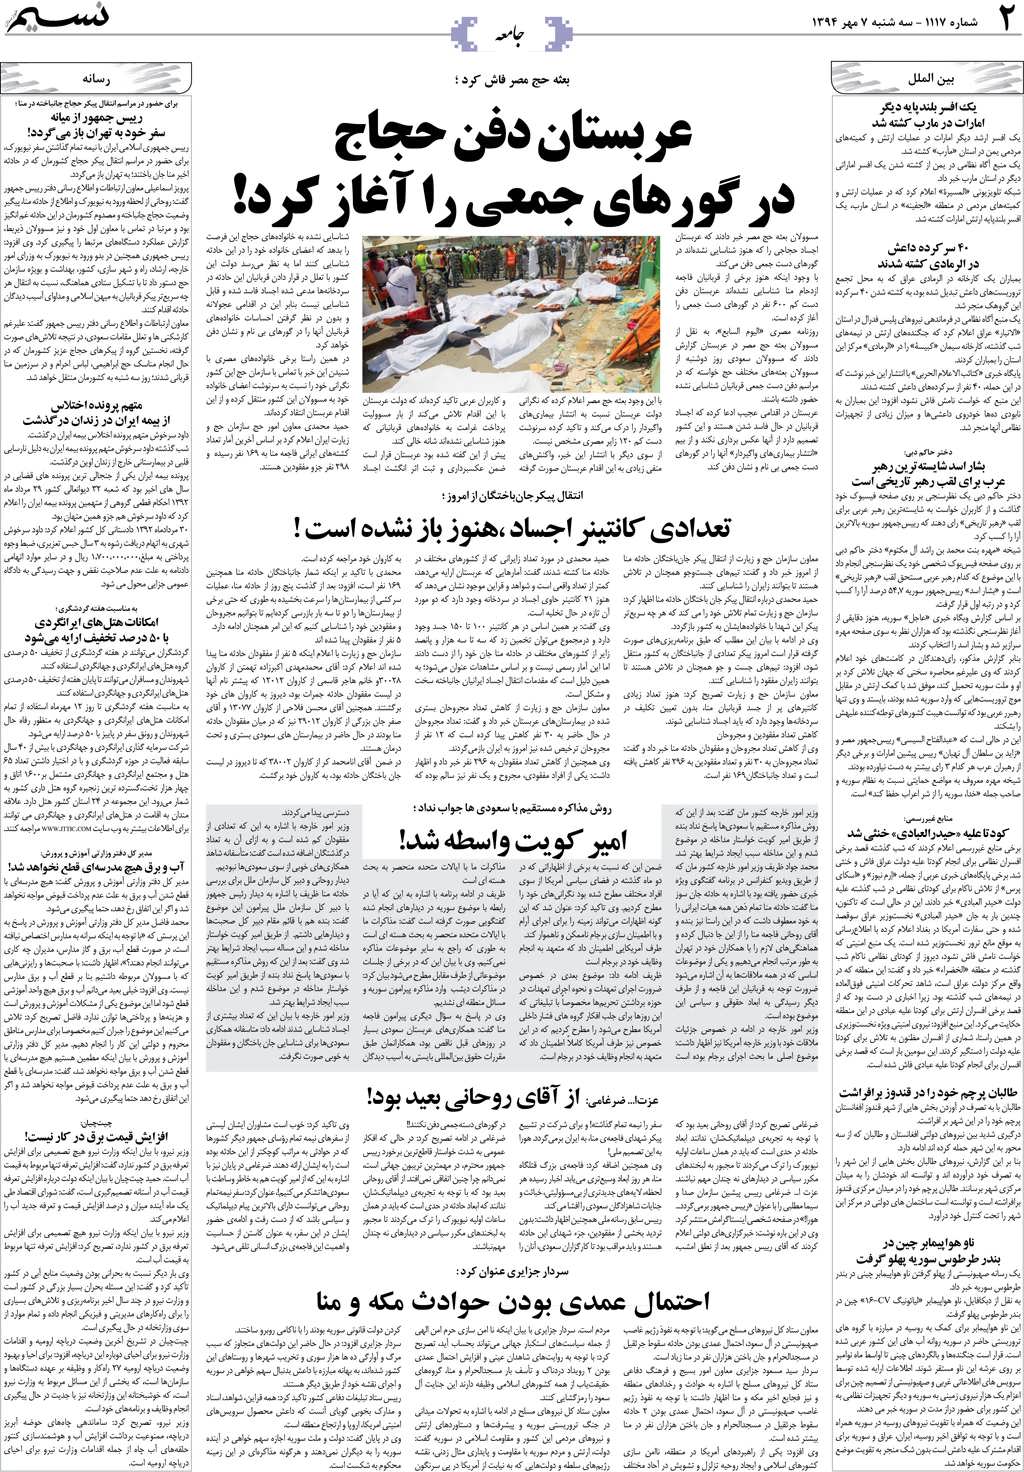 صفحه جامعه روزنامه نسیم شماره 1117